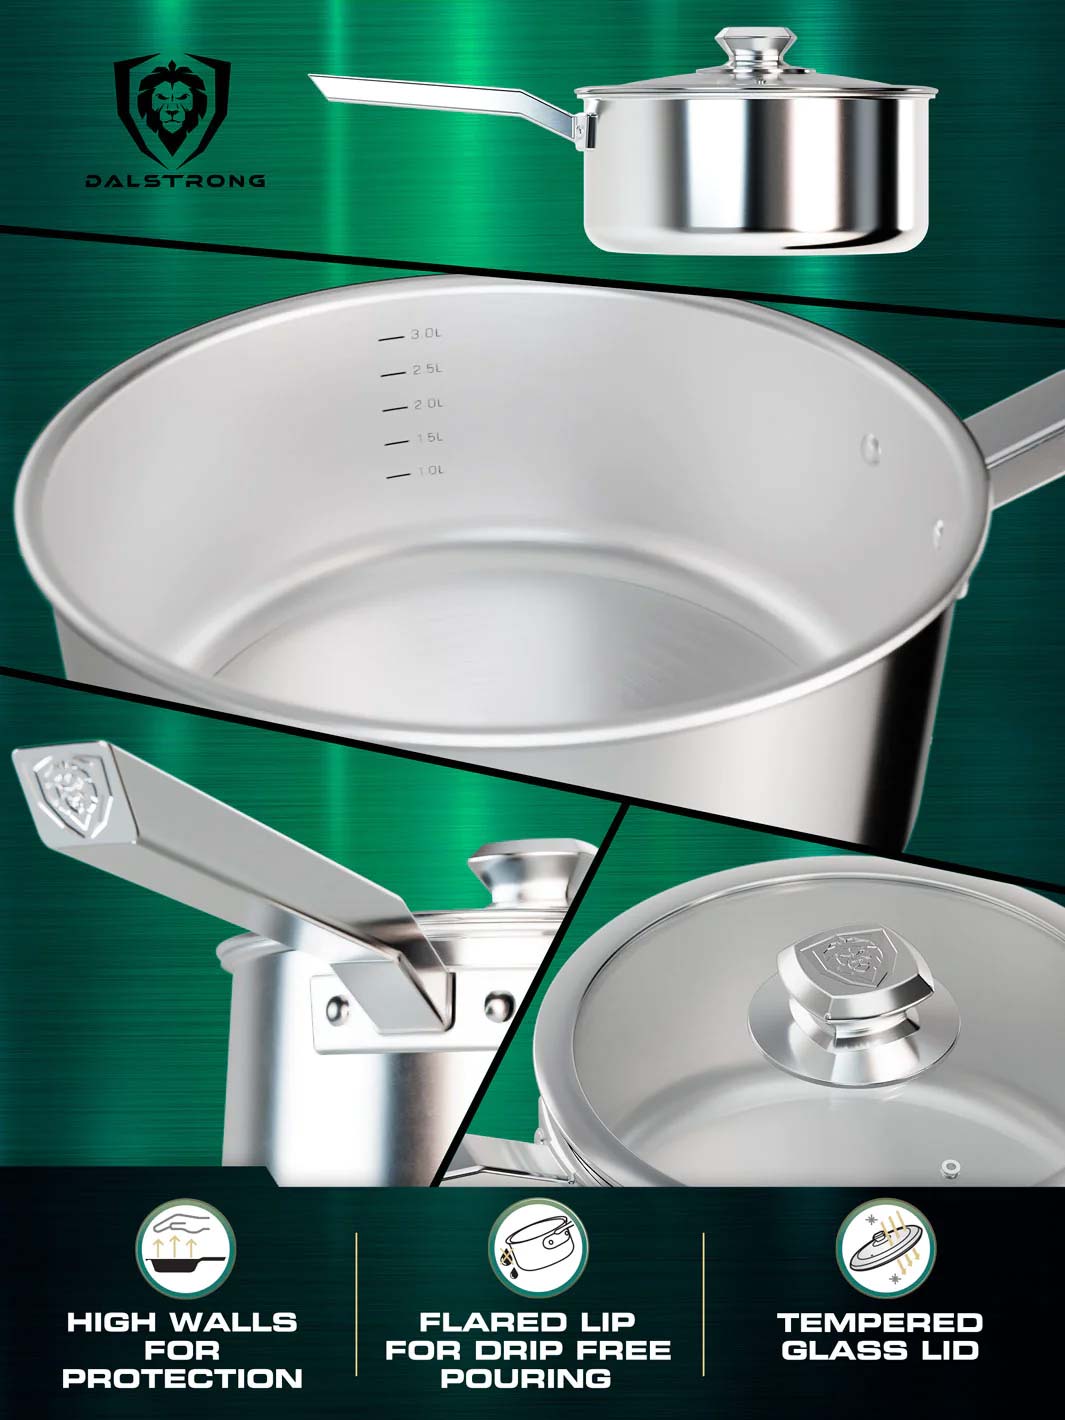 Dalstrong Sauce Pot - 3 Quart - The Oberon Series - 3-Ply Aluminum Core Cookware - Cooking Pot - Stock Pot - Premium Silver P